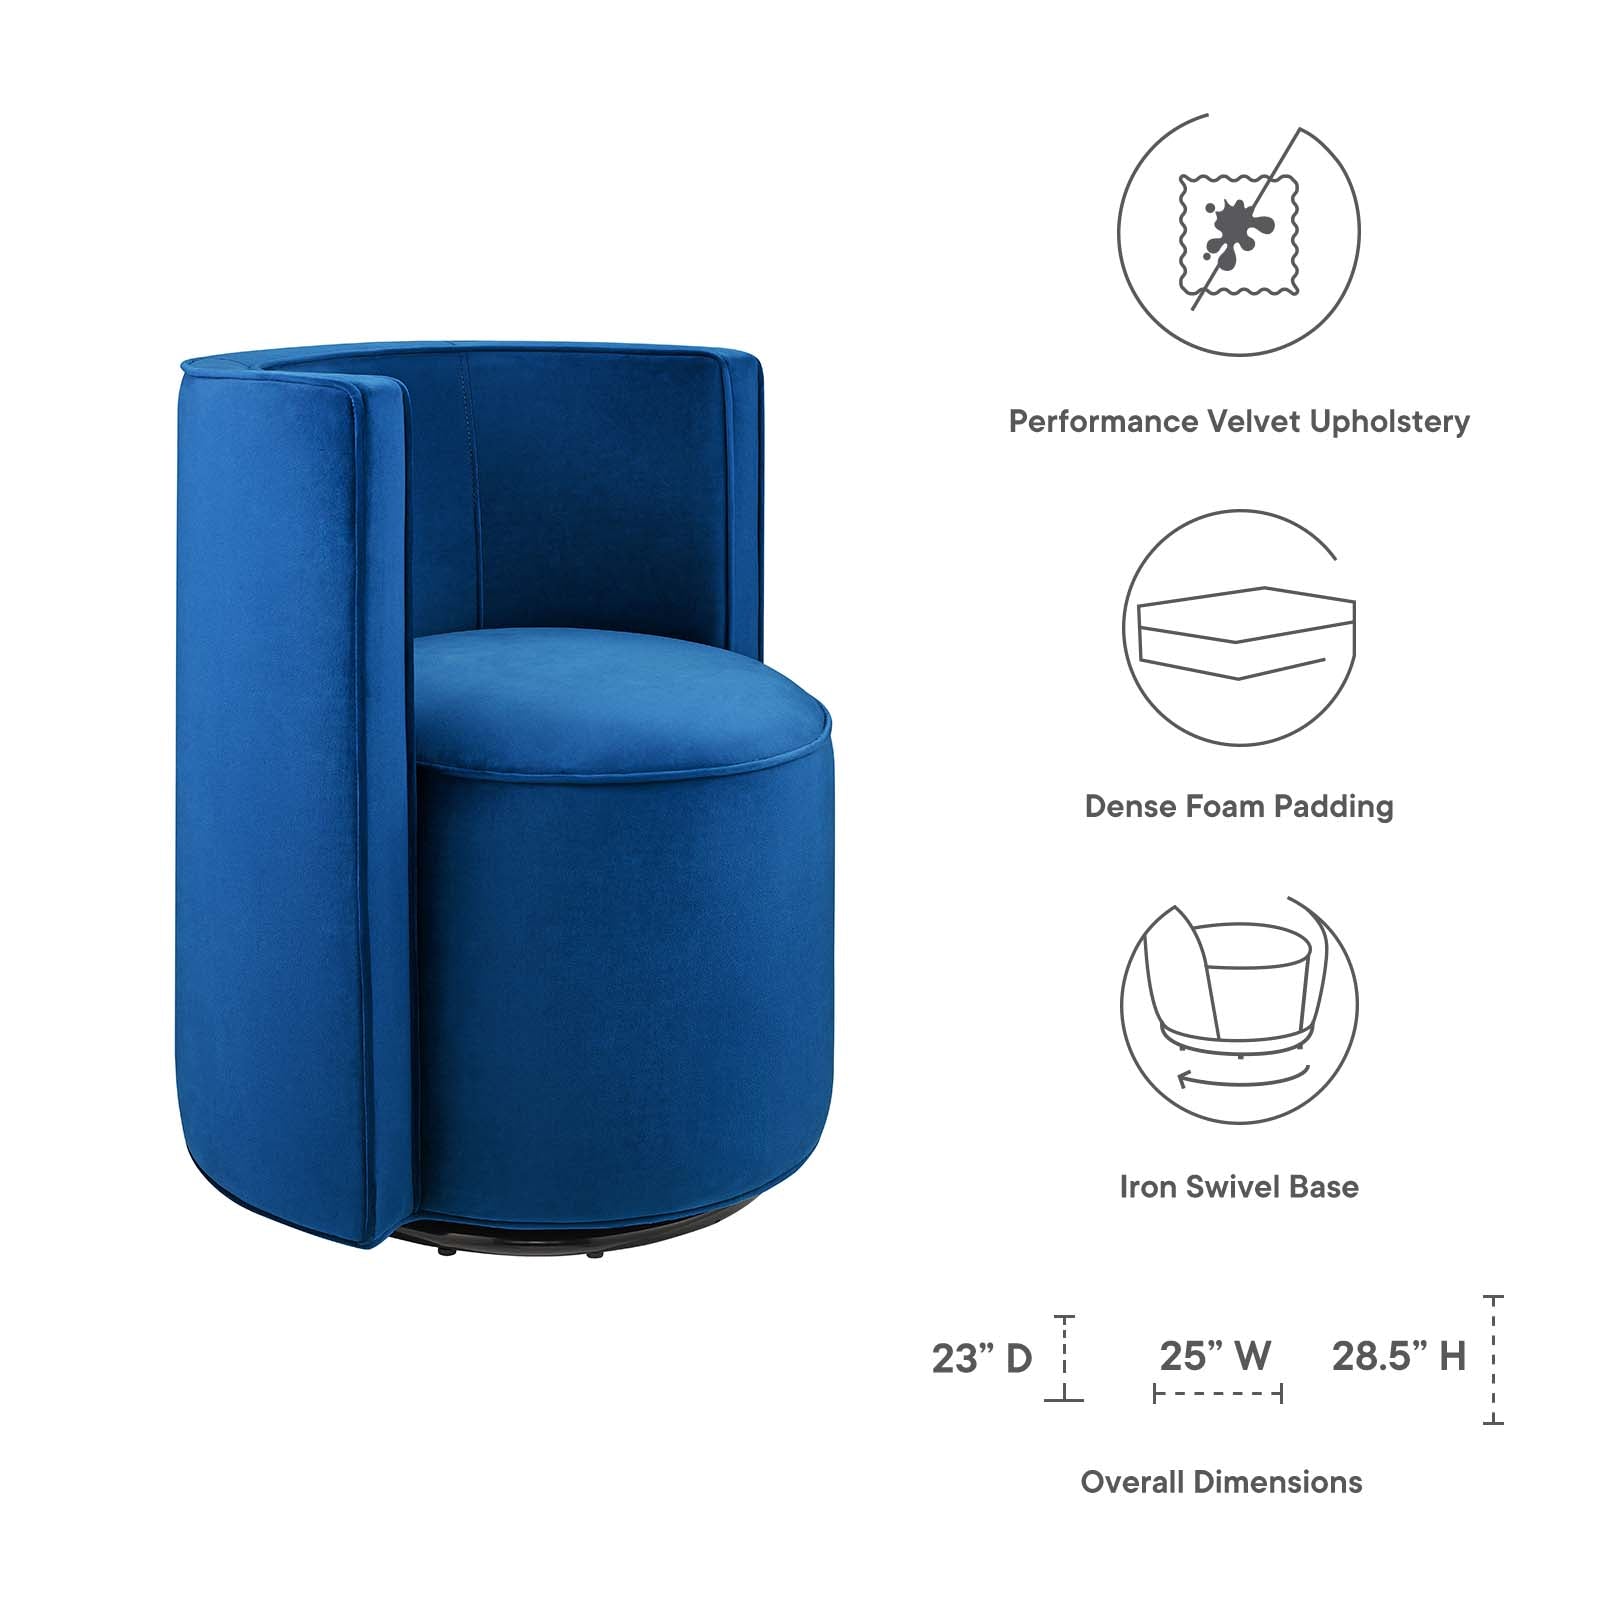 Della Performance Velvet Fabric Swivel Chair - East Shore Modern Home Furnishings